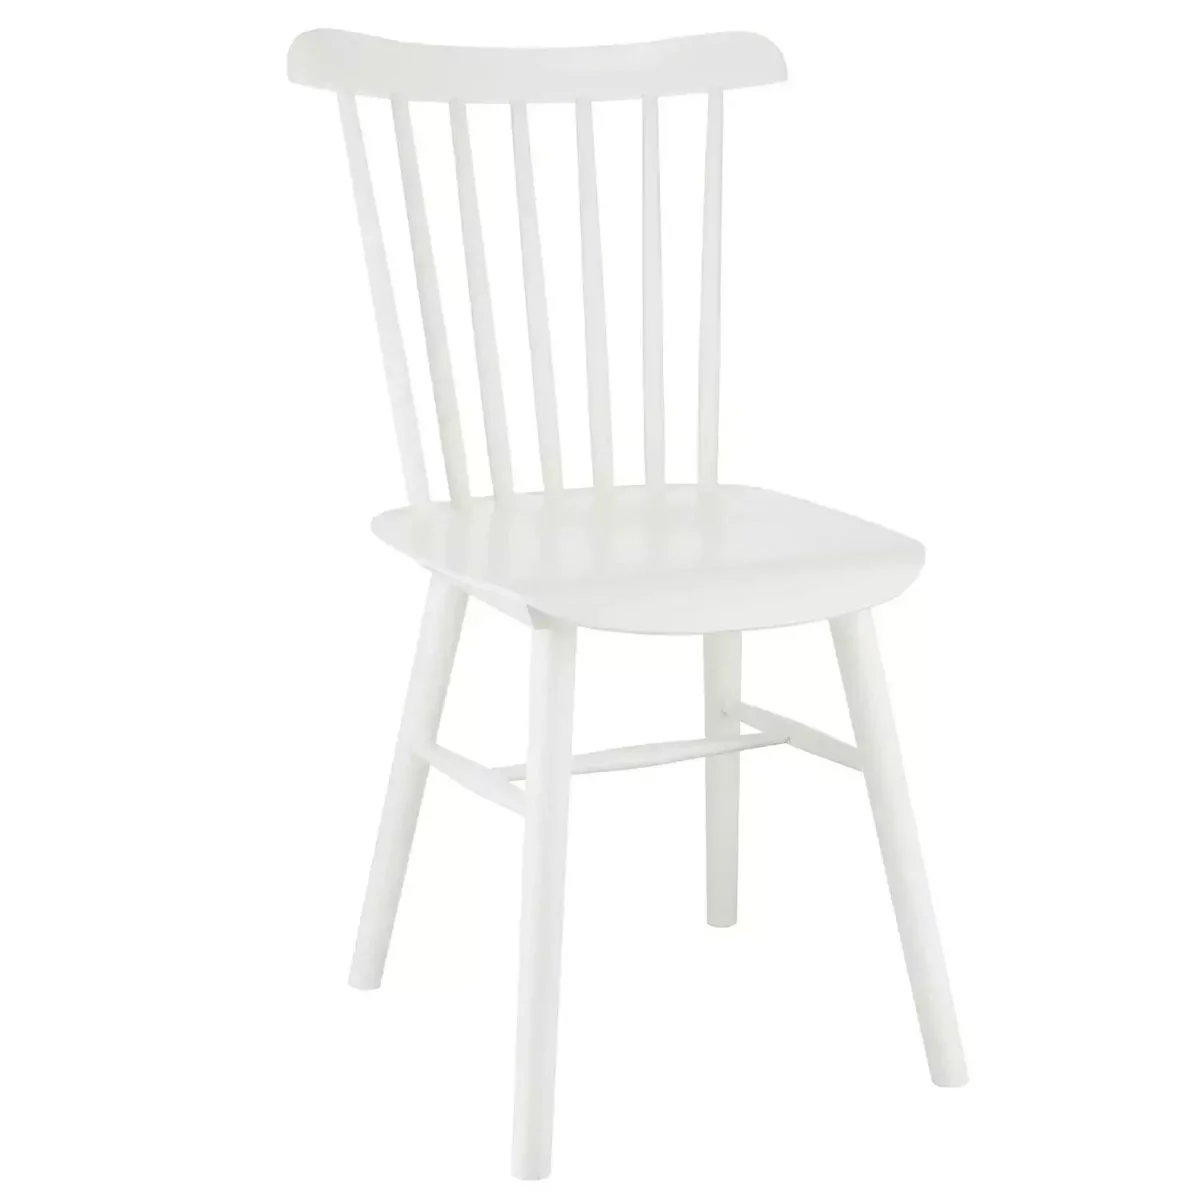 Białe krzesło skandynawskie Stick wygodne do salonu drewno